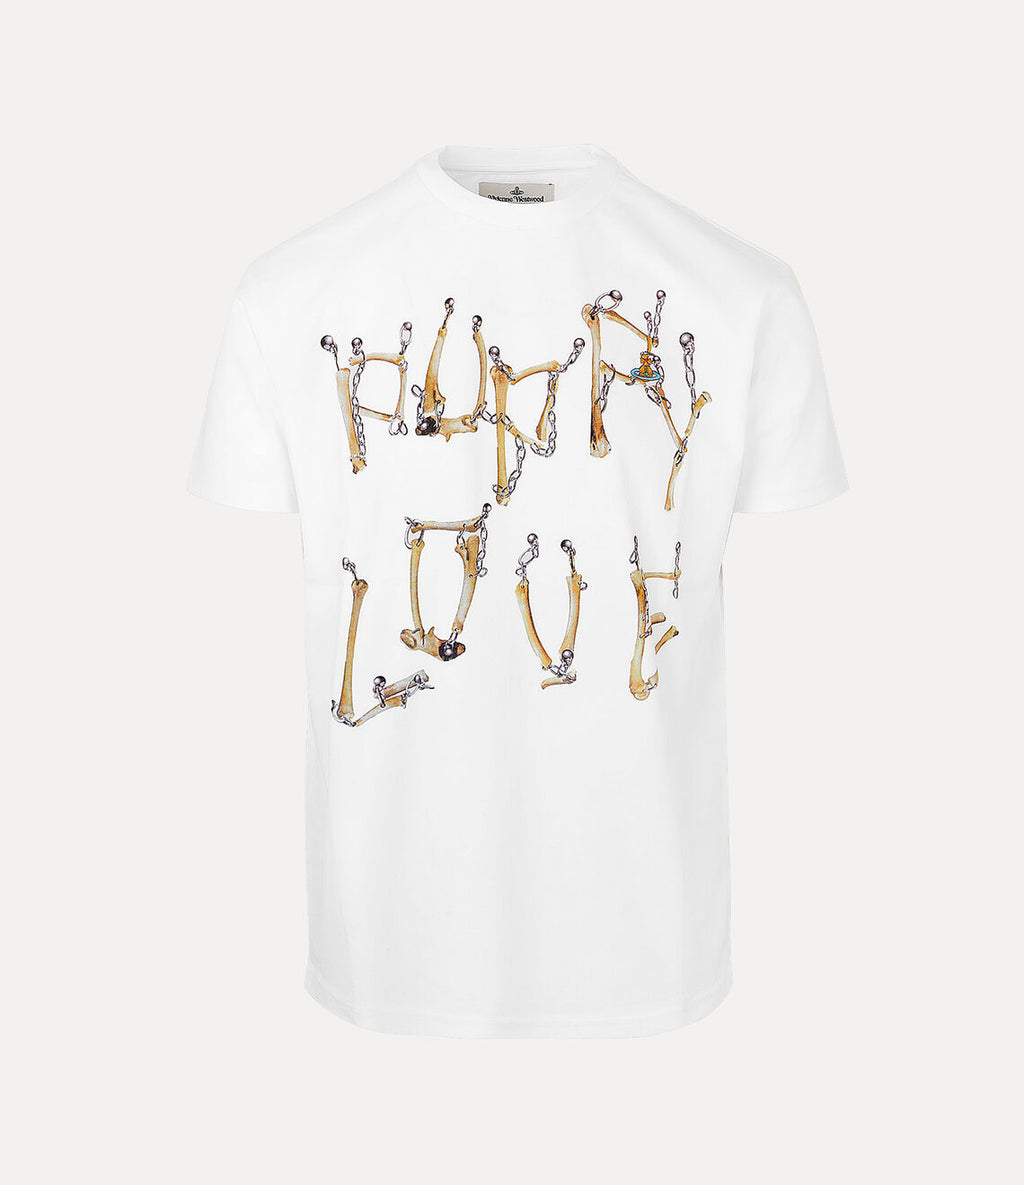 Bones 'N Chain T-Shirt